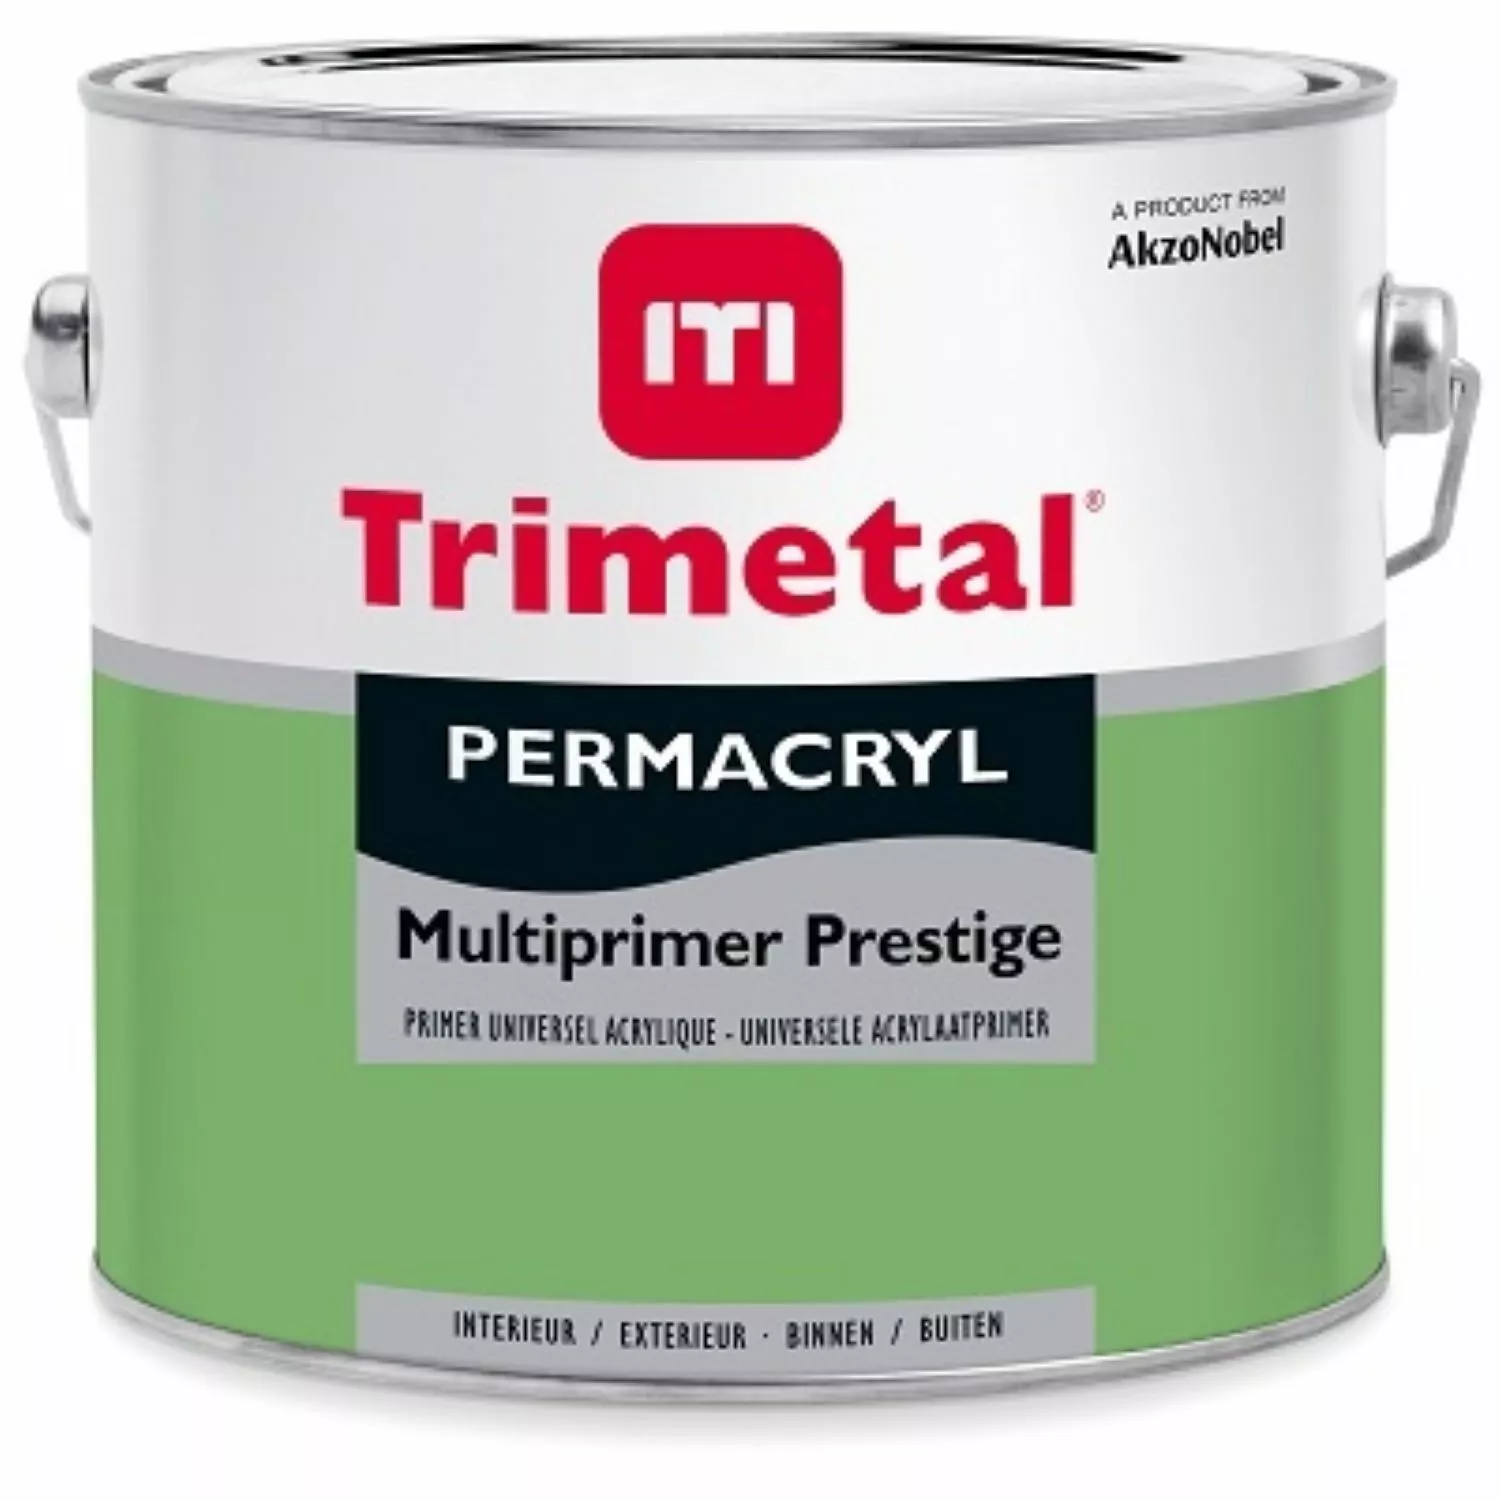 Trimetal Permacryl Multiprimer Prestige - op kleur gemengd - 2,5L-image